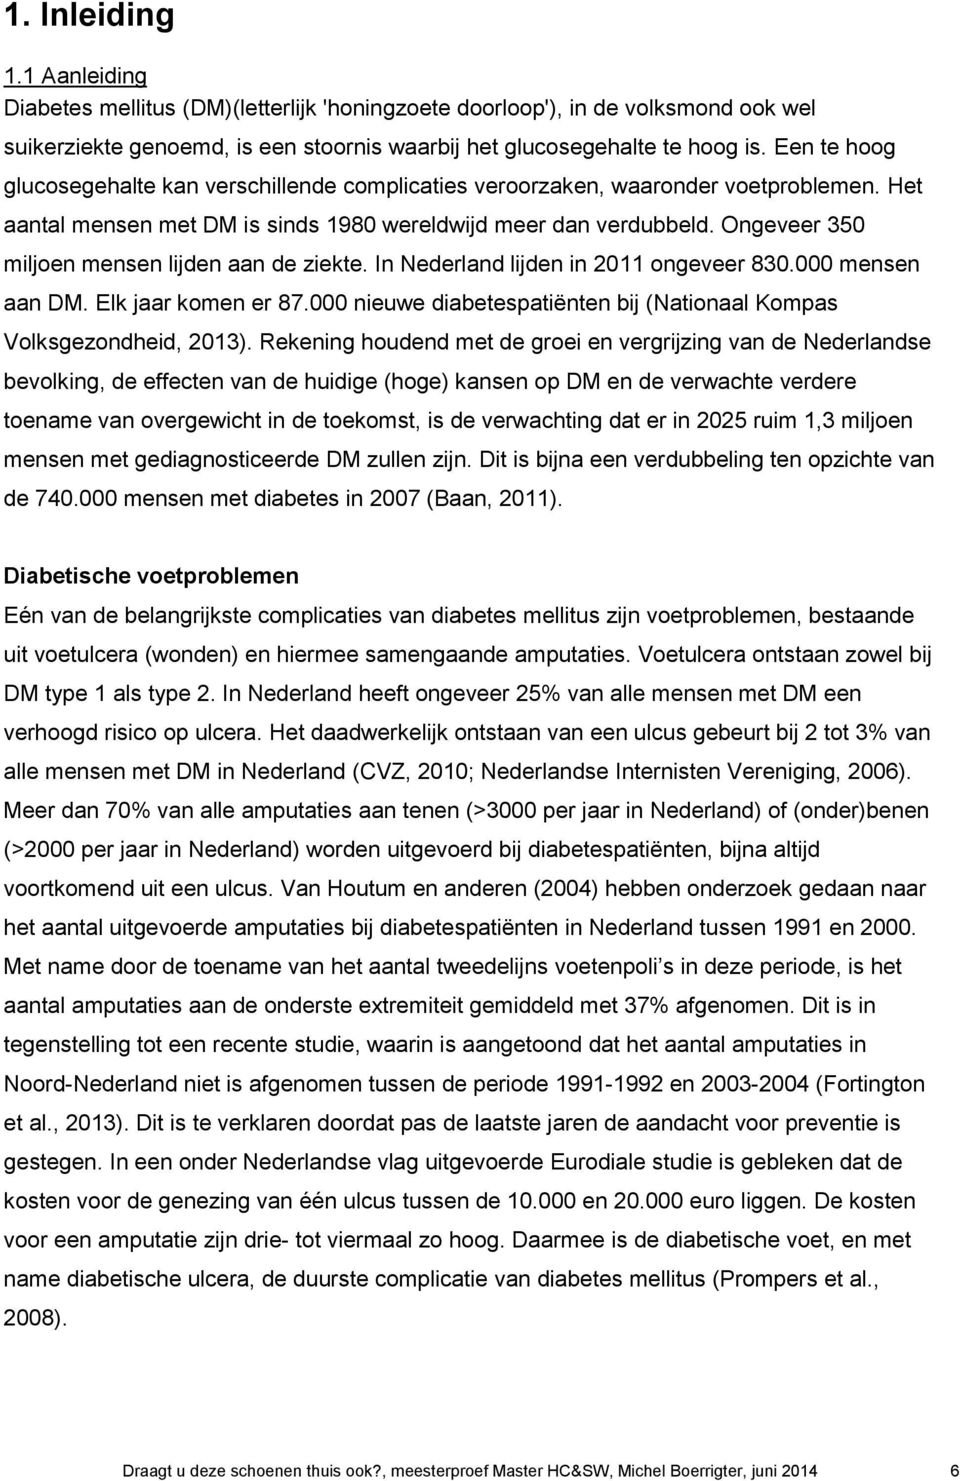 Ongeveer 350 miljoen mensen lijden aan de ziekte. In Nederland lijden in 2011 ongeveer 830.000 mensen aan DM. Elk jaar komen er 87.